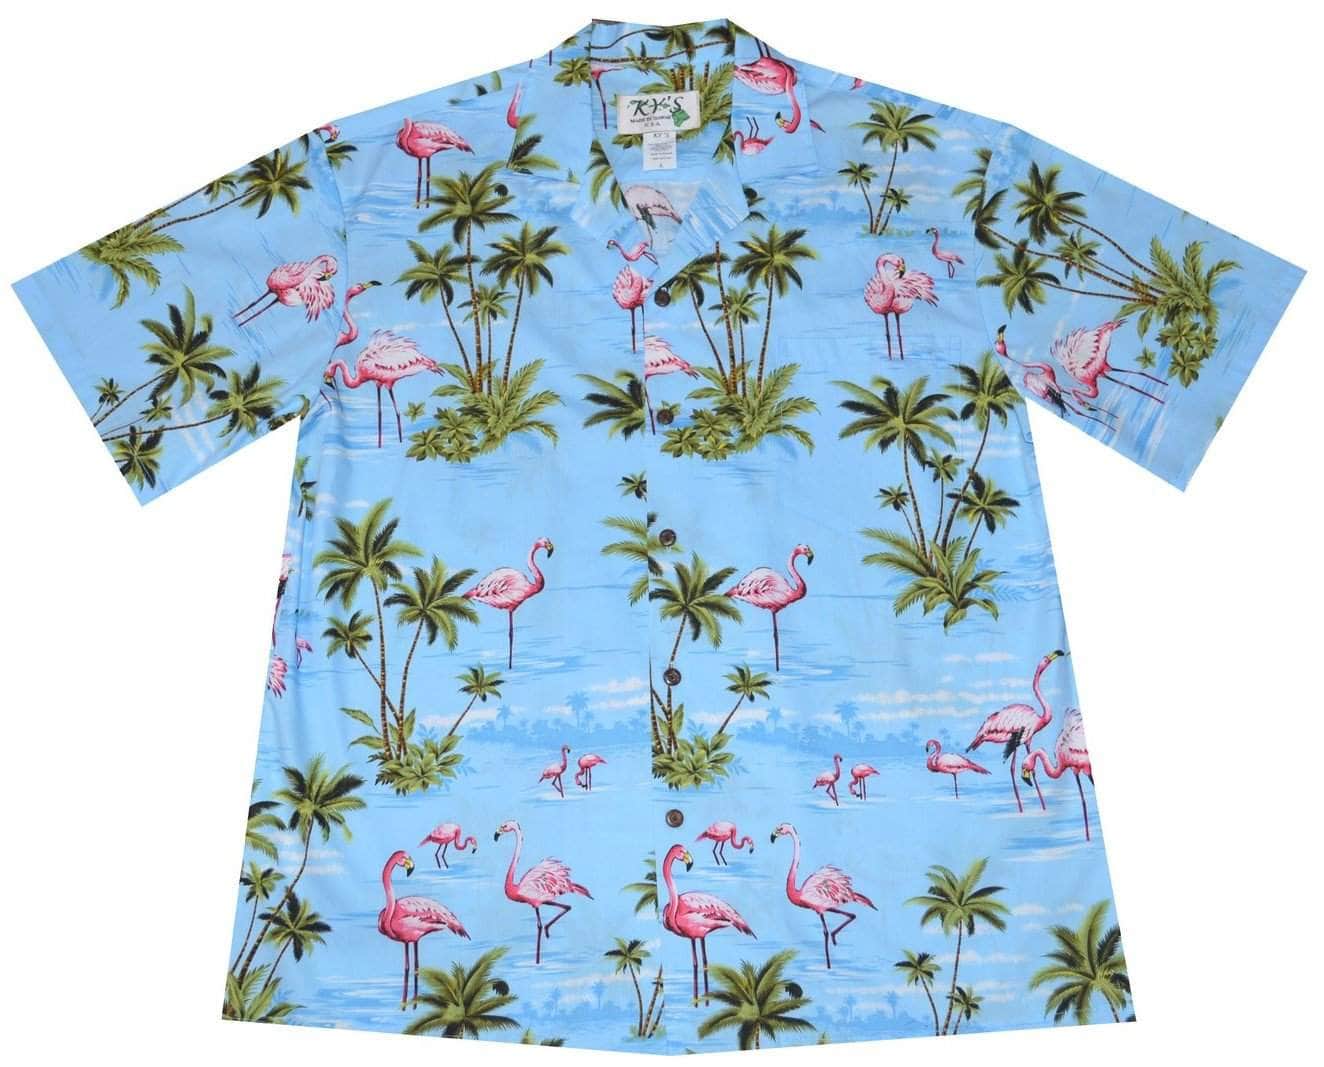 Ky's Hawaiian Shirts Manufacturer and Wholesaler - Made in Hawaii, USA